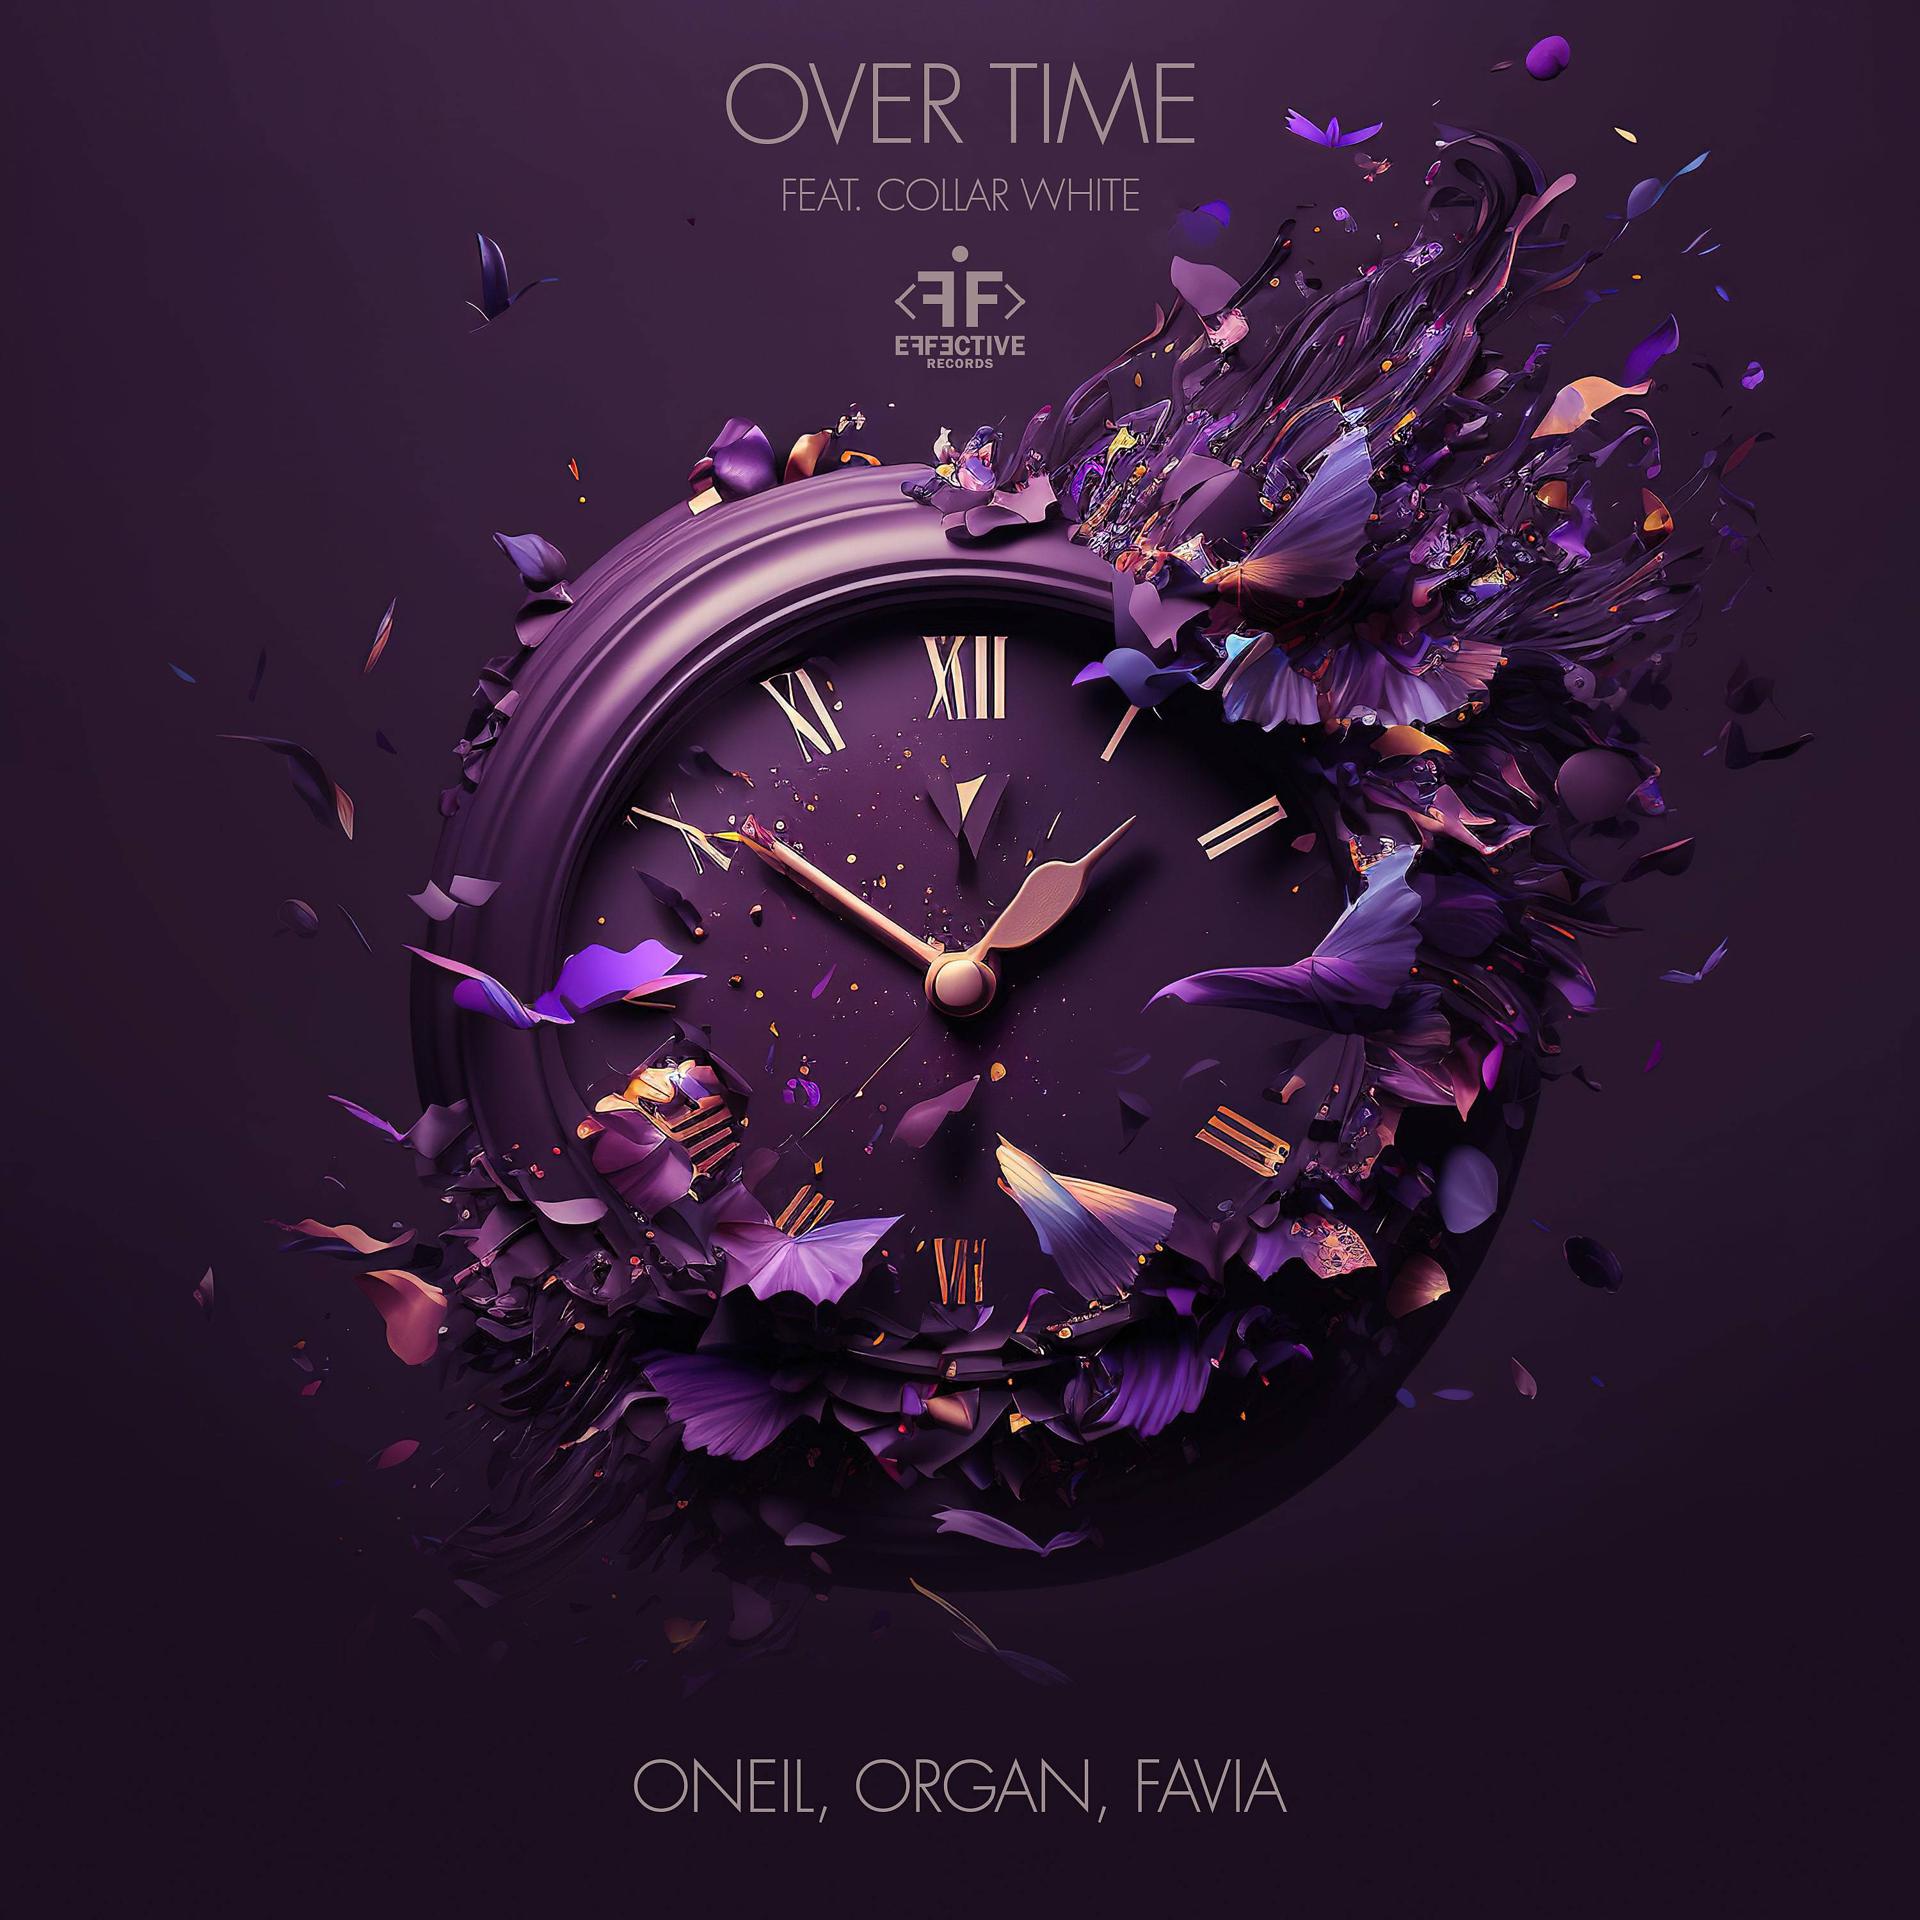 Постер к треку ONEIL, ORGAN, FAVIA, Collar White - Over Time